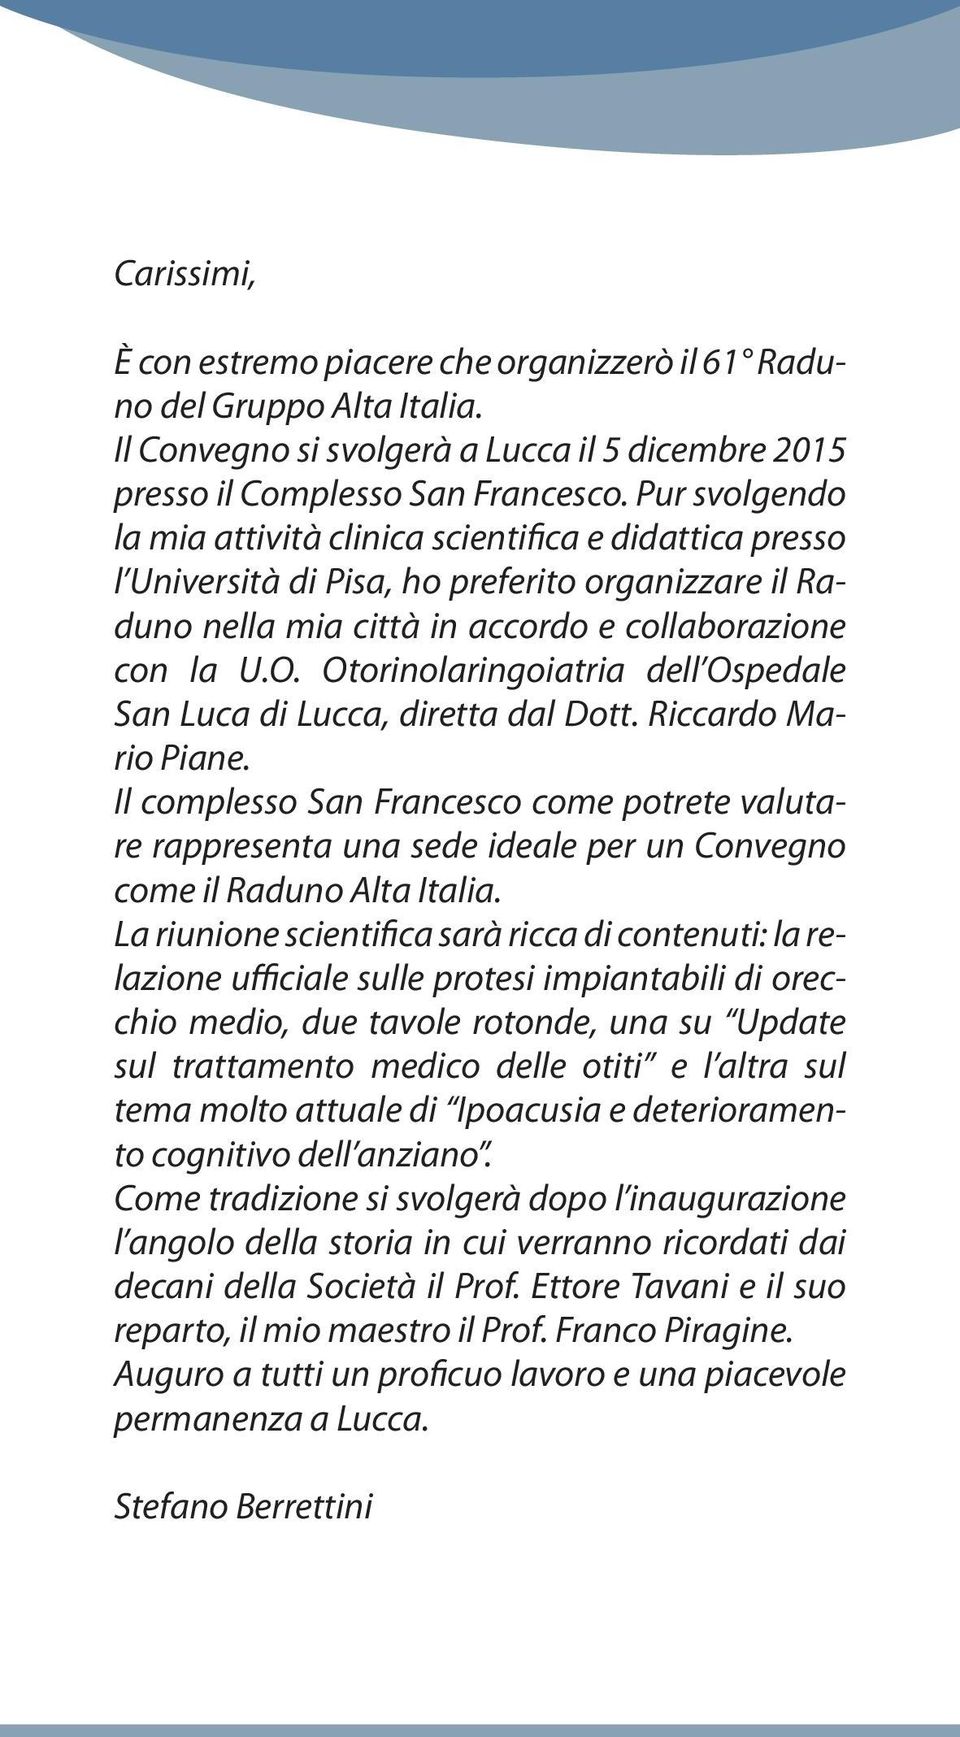 Otorinolaringoiatria dell Ospedale San Luca di Lucca, diretta dal Dott. Riccardo Mario Piane.